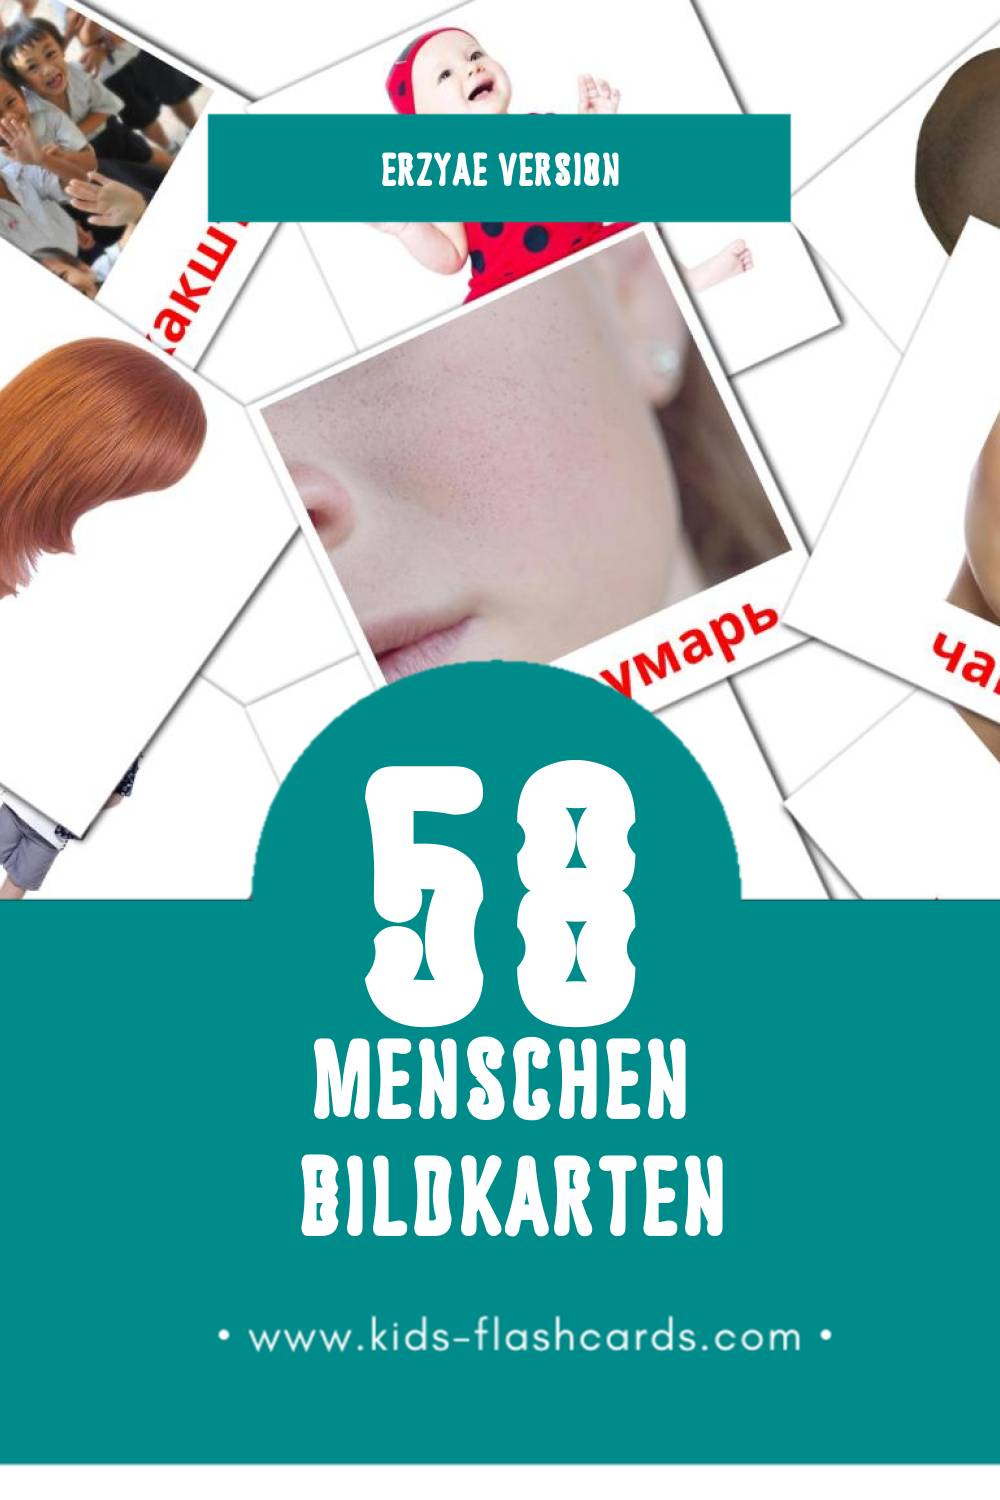 Visual Ломанть Flashcards für Kleinkinder (58 Karten in Erzya)